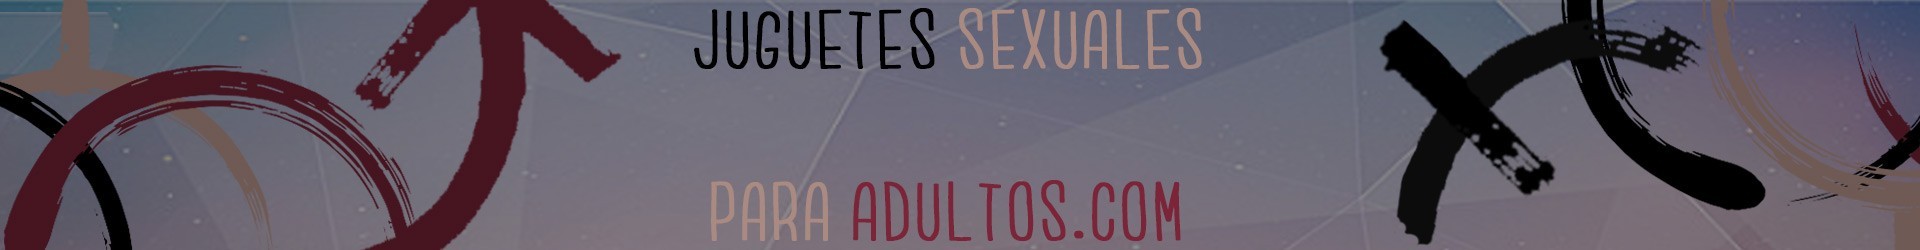 Kits de masaje en Sex Shop Juguetes Sexuales para Adultos